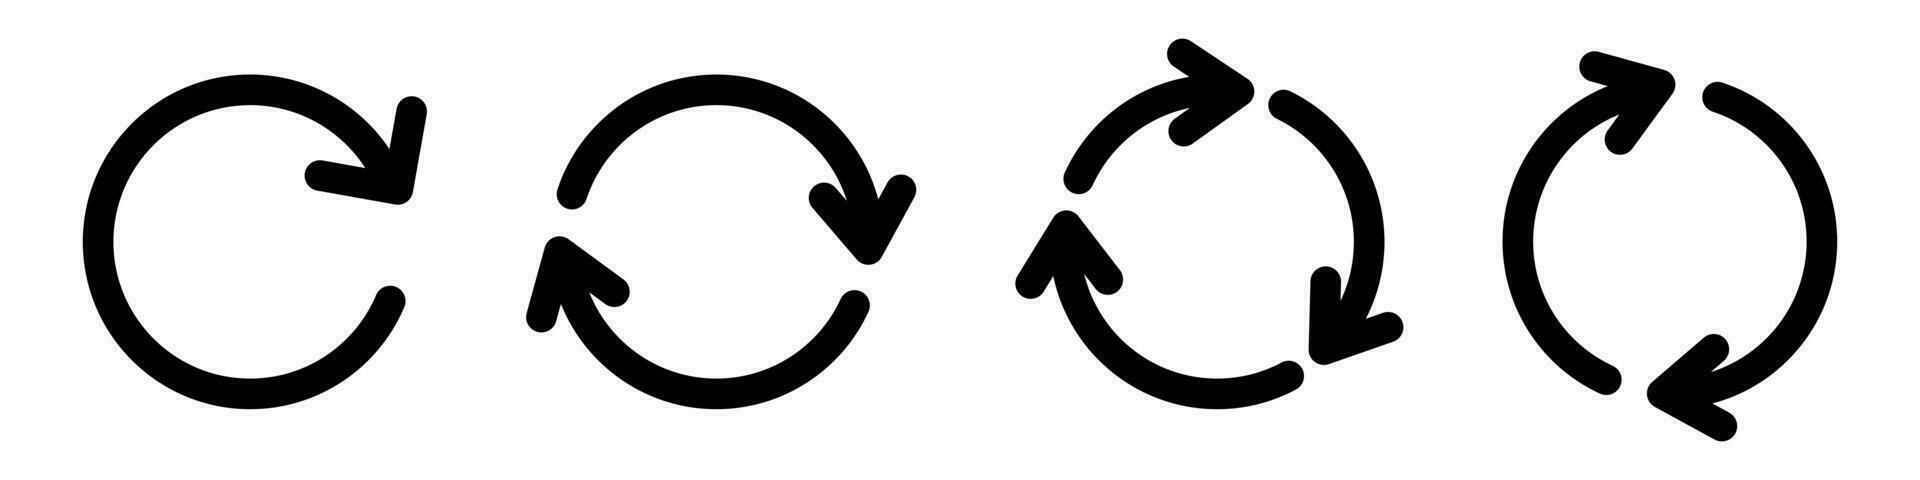 Circular arrows. Rotation symbol. Refresh icons set. Loading arrows in black. Loop pictogram vector